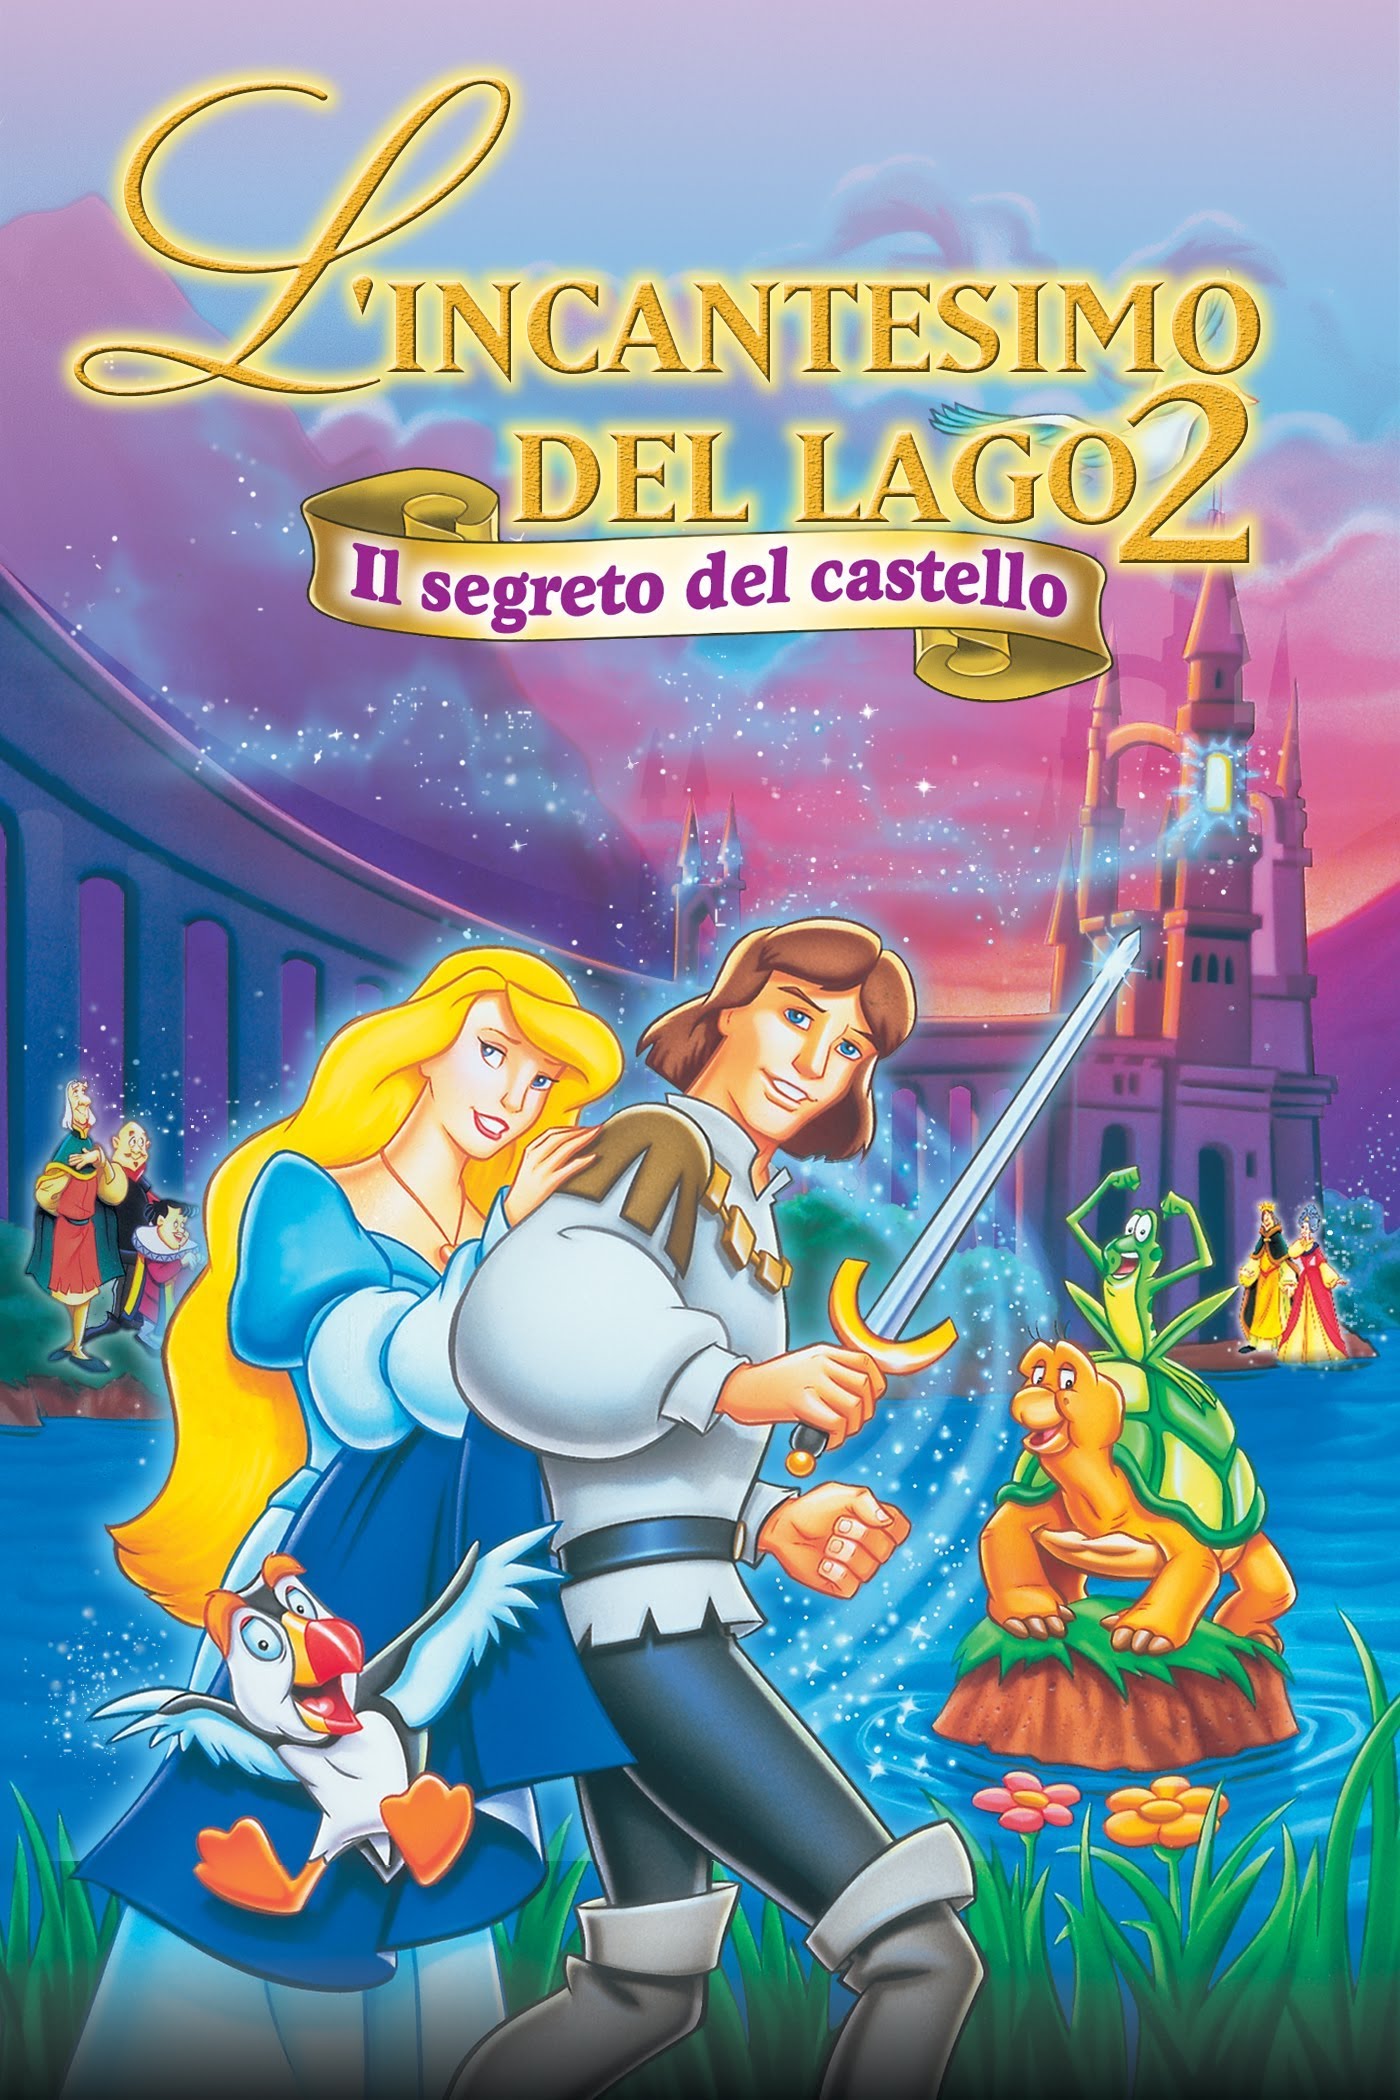 L’incantesimo del lago 2 – Il segreto del castello (1997)